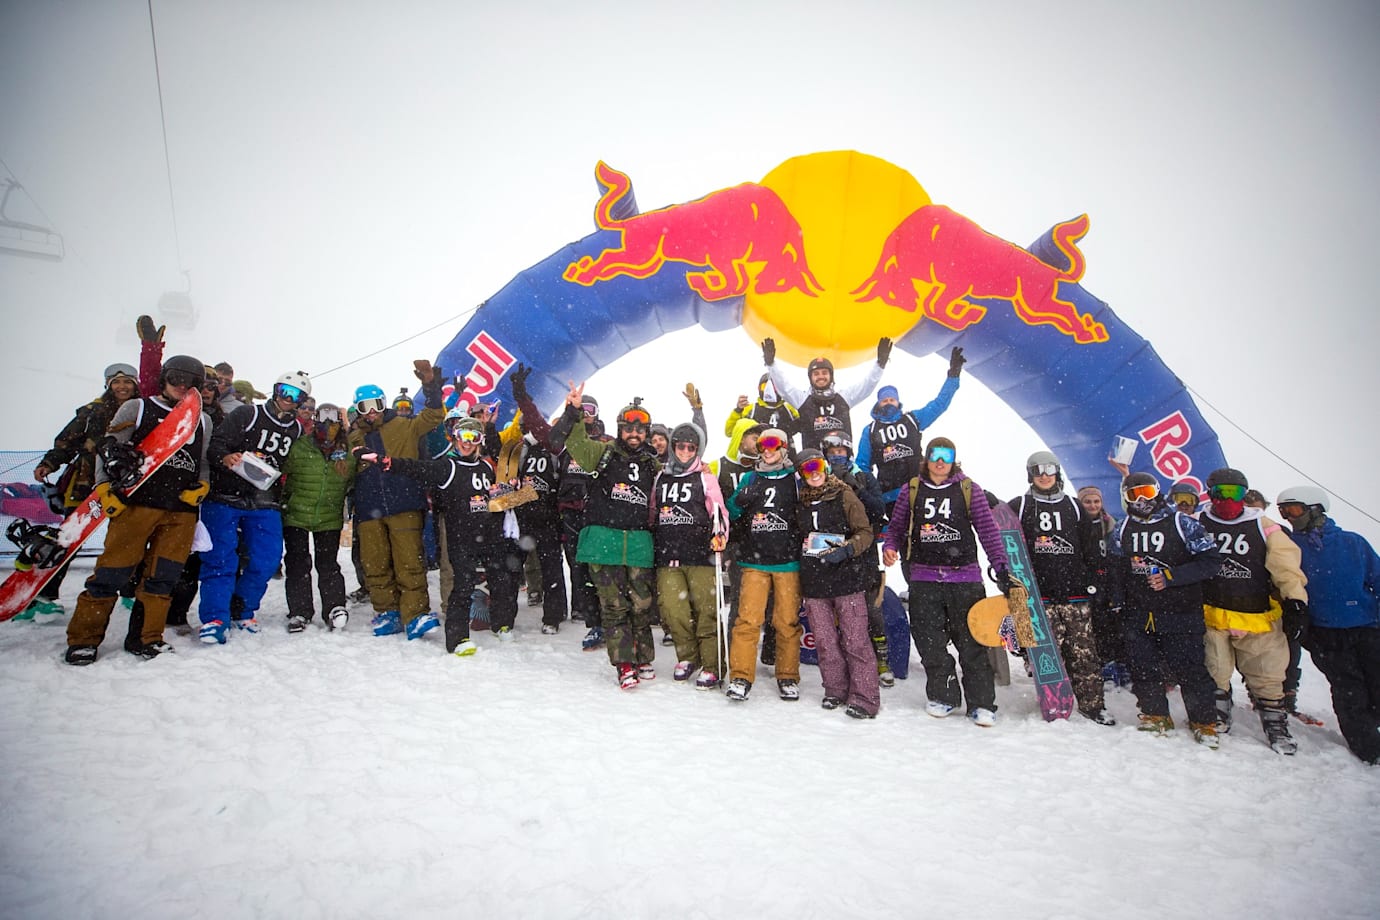 Το πιο fun ski & snowboard event που έγινε το Σάββατο 26 Φεβρουαρίου στο Χιονοδρομικό Κέντρο Παρνασσού!